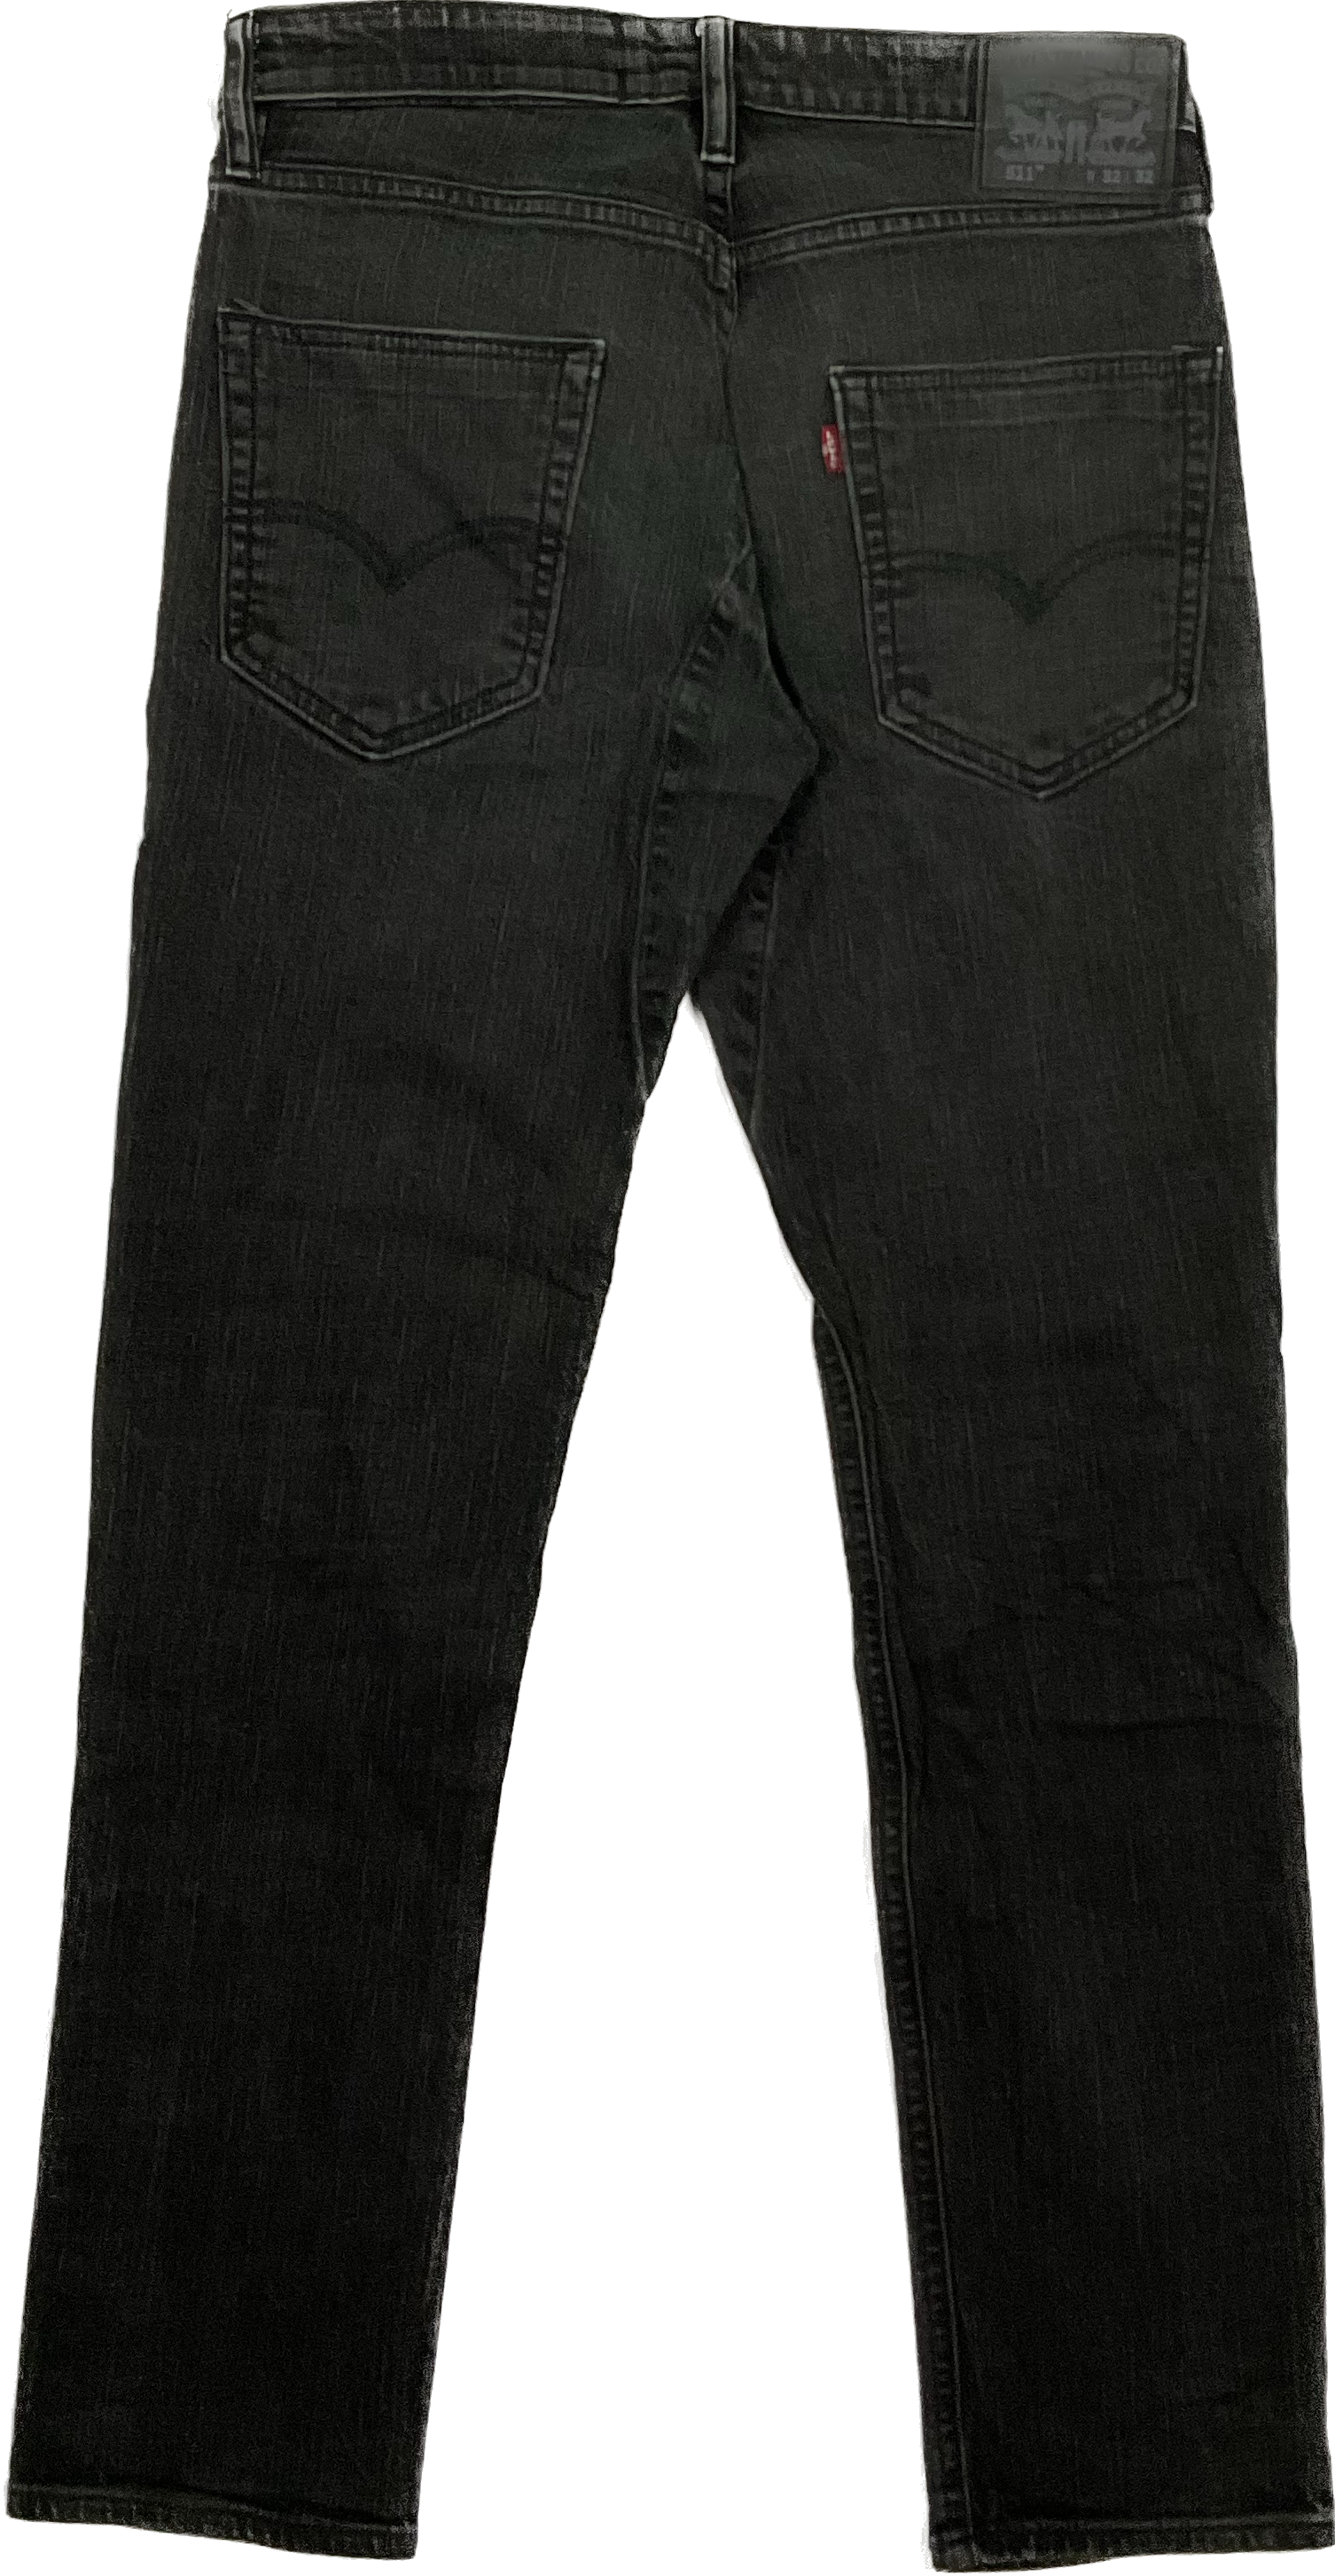 Levis 511 Jeans